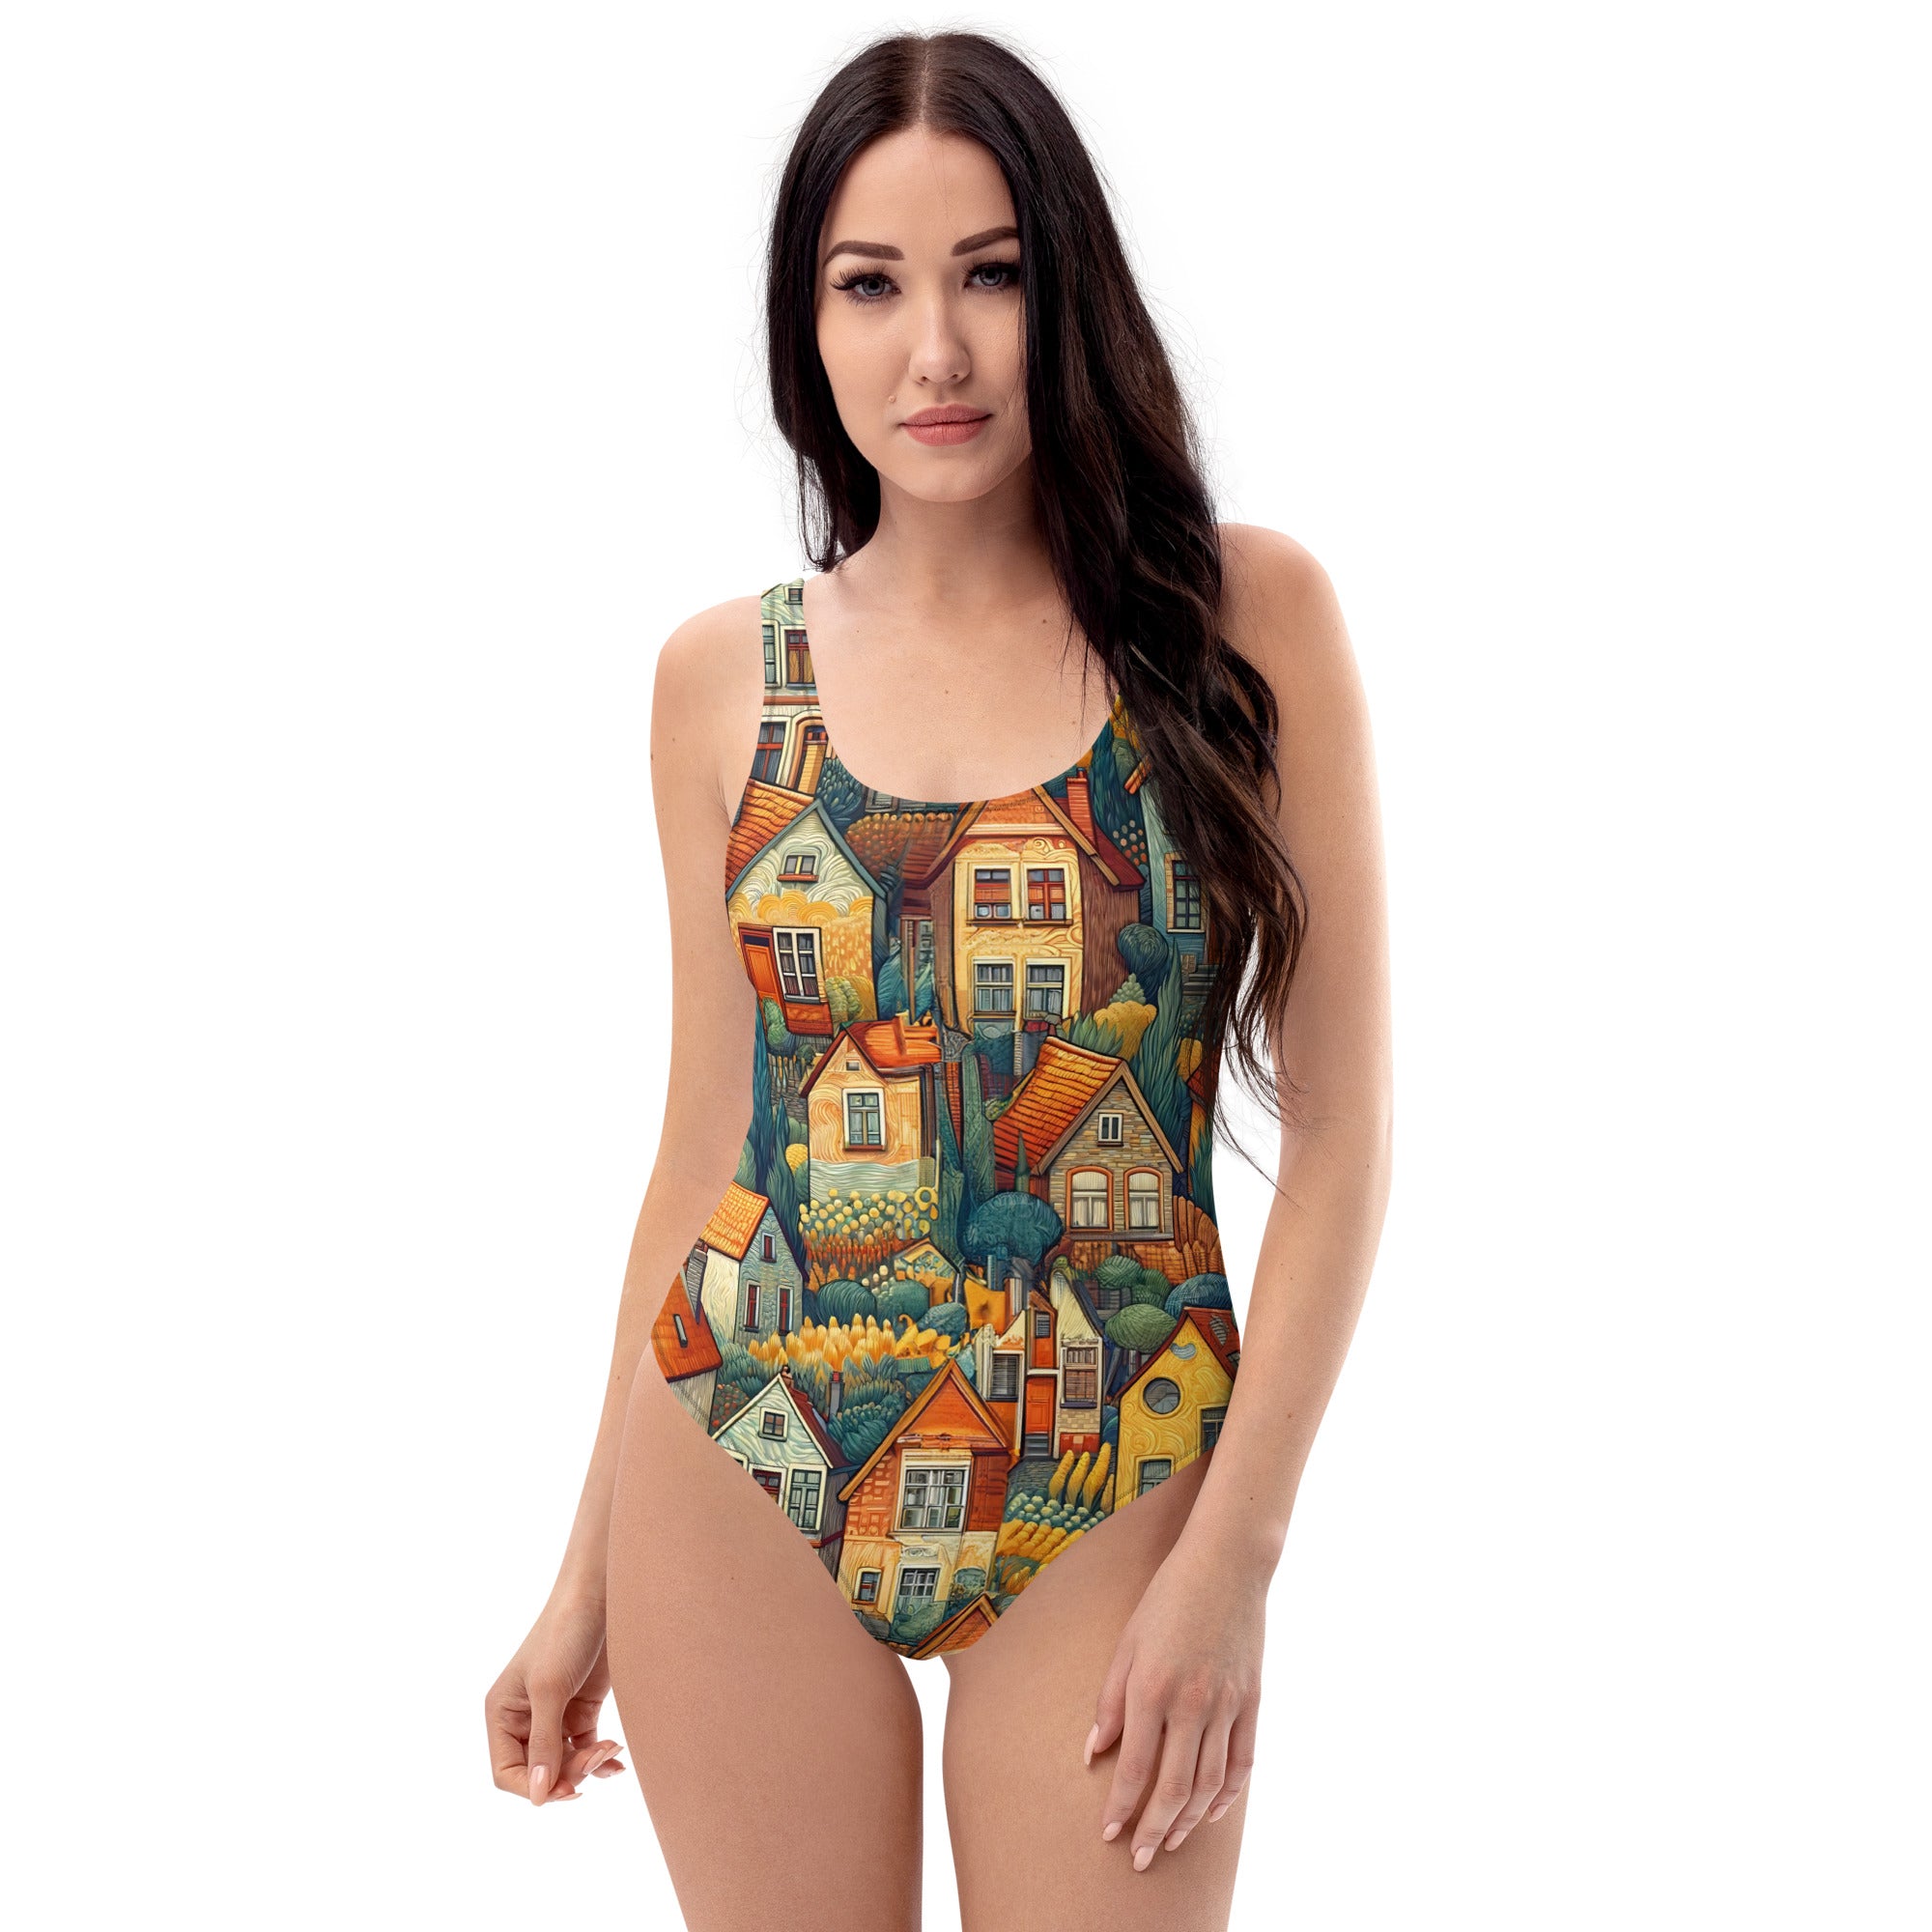 Vincent van Gogh 'Houses at Auvers' Famous Painting Swimsuit | Premium Art One Piece Swimsuit